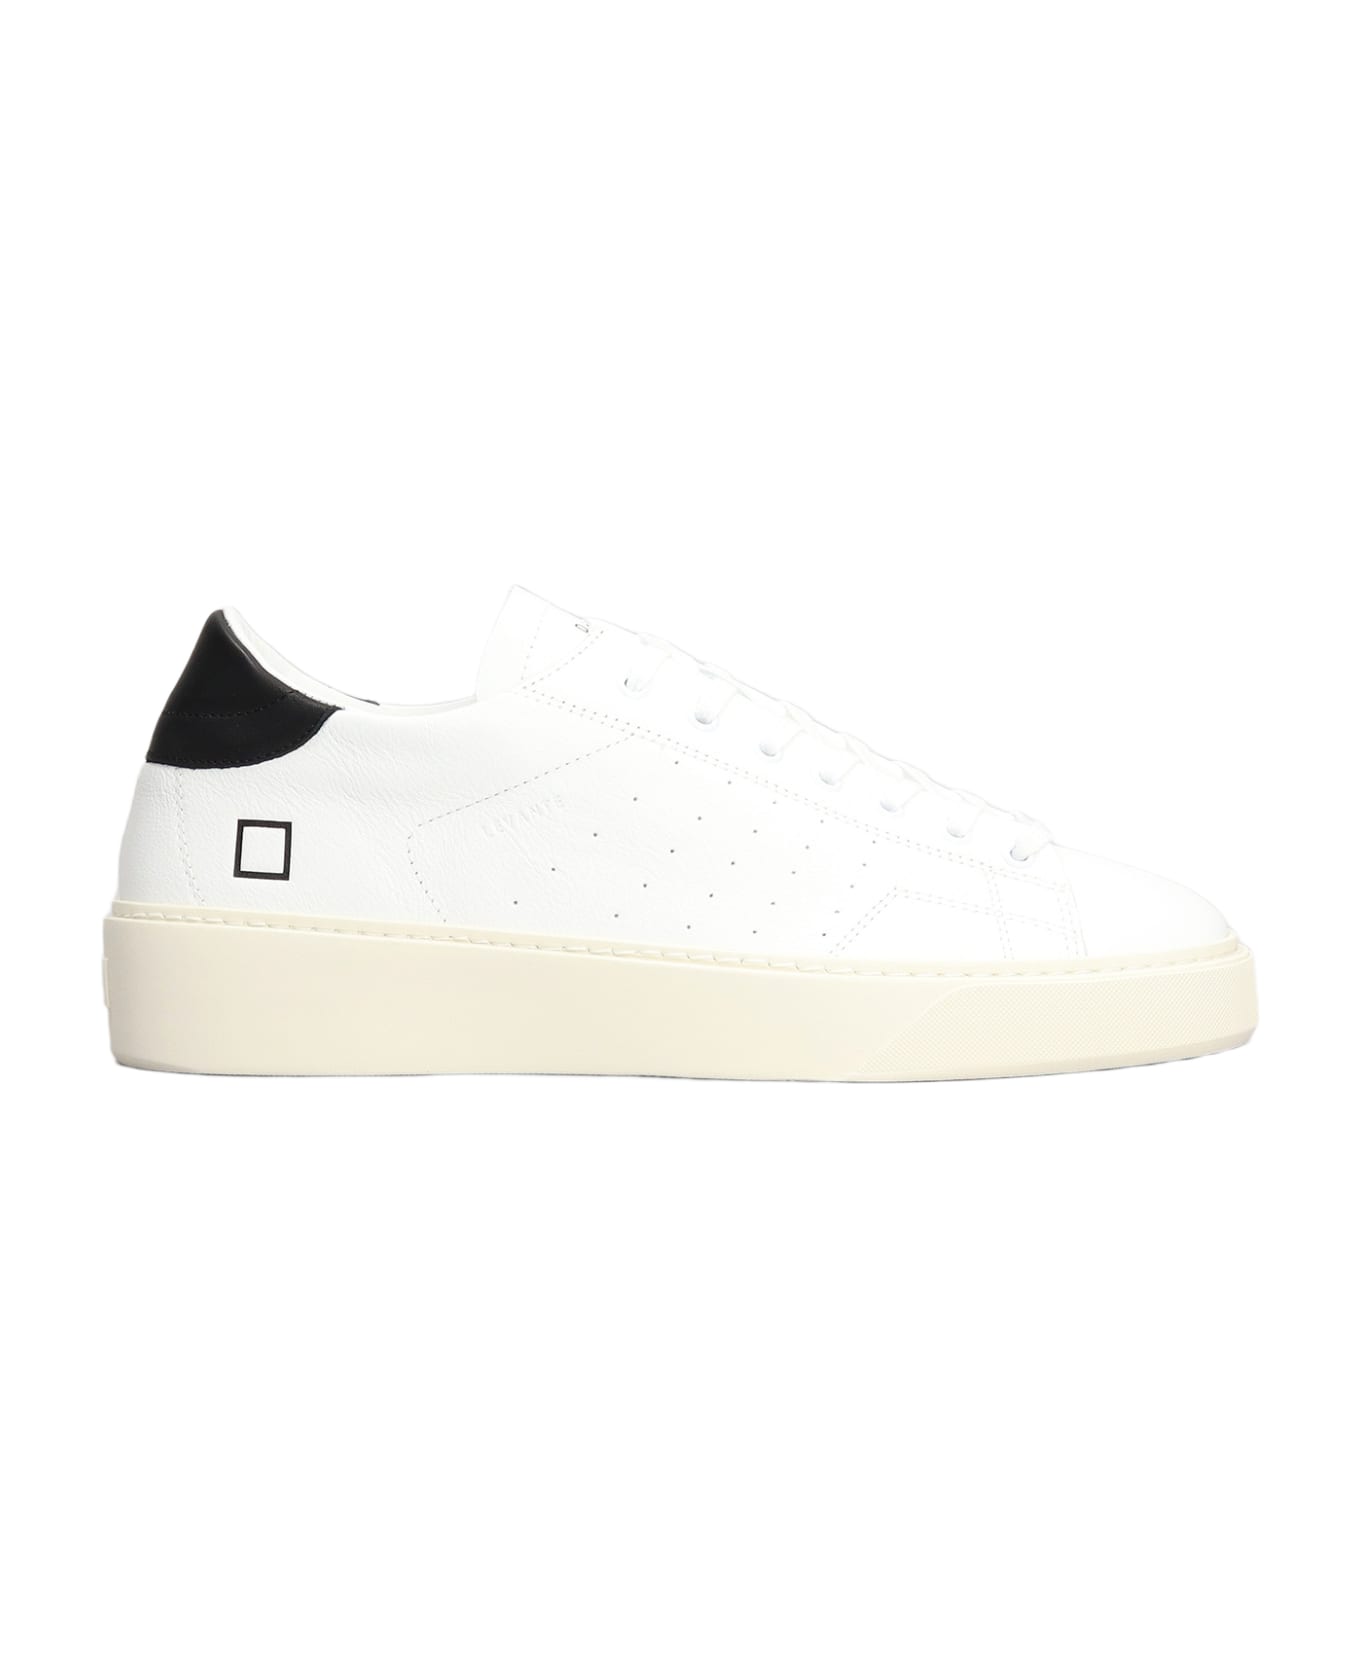 D.A.T.E. Levante Sneakers In White Leather D.A.T.E. - WHITE/BLACK